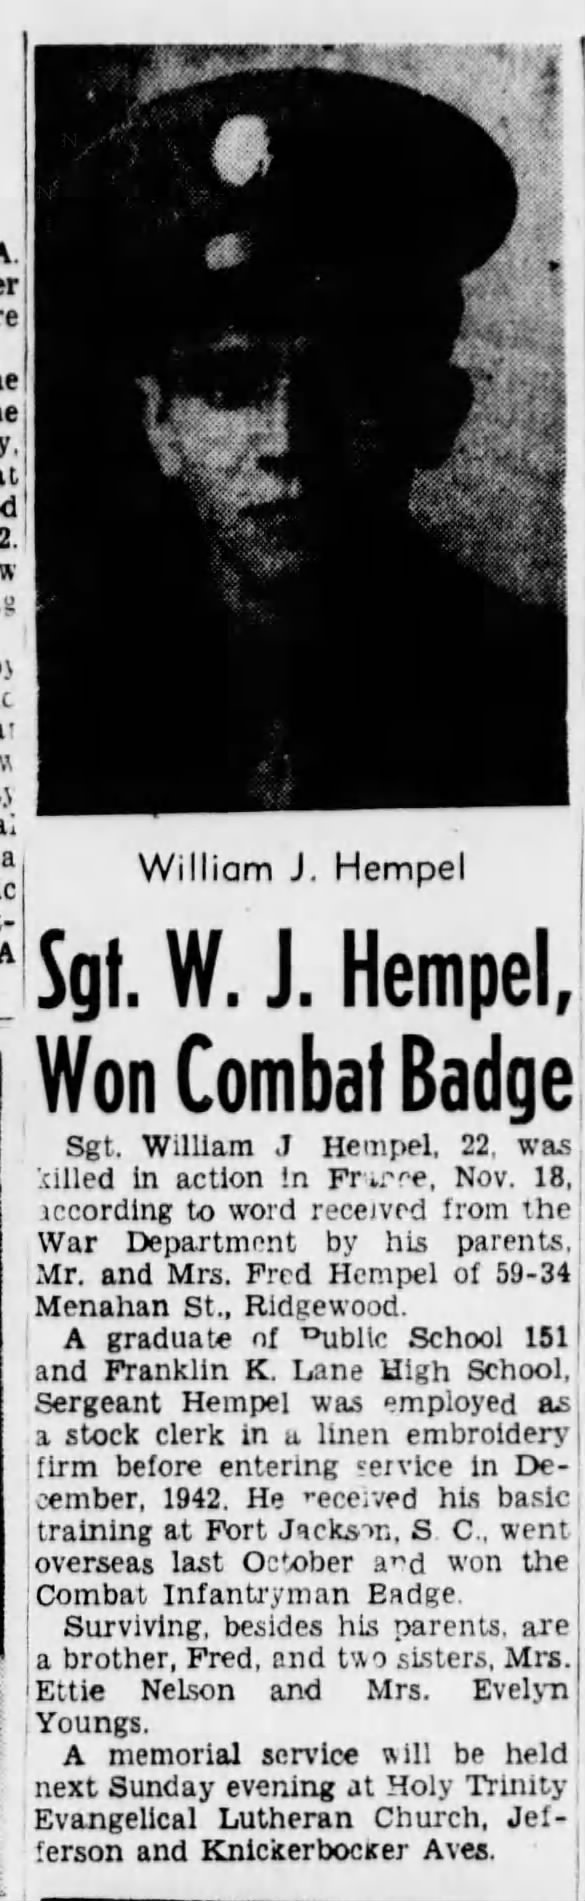 Sgt W. J. Hempel Won Combat Badge - 14 Dec 1944